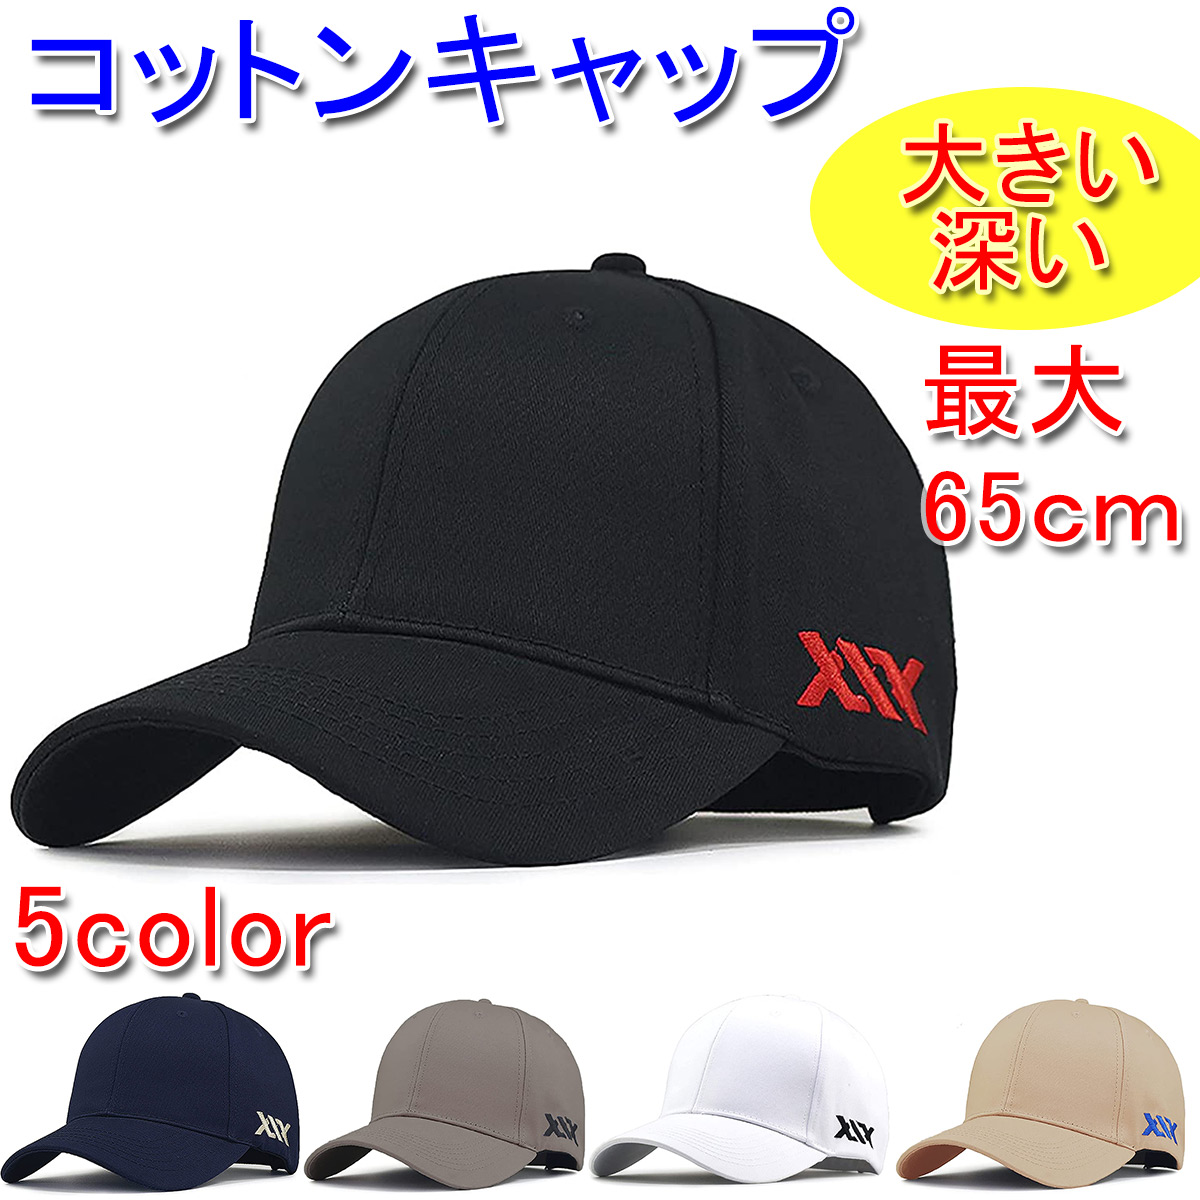 大きいサイズ(最大65cm) 深め コットンキャップ 刺繍ロゴ 頭周り ベースボールキャップ 帽子